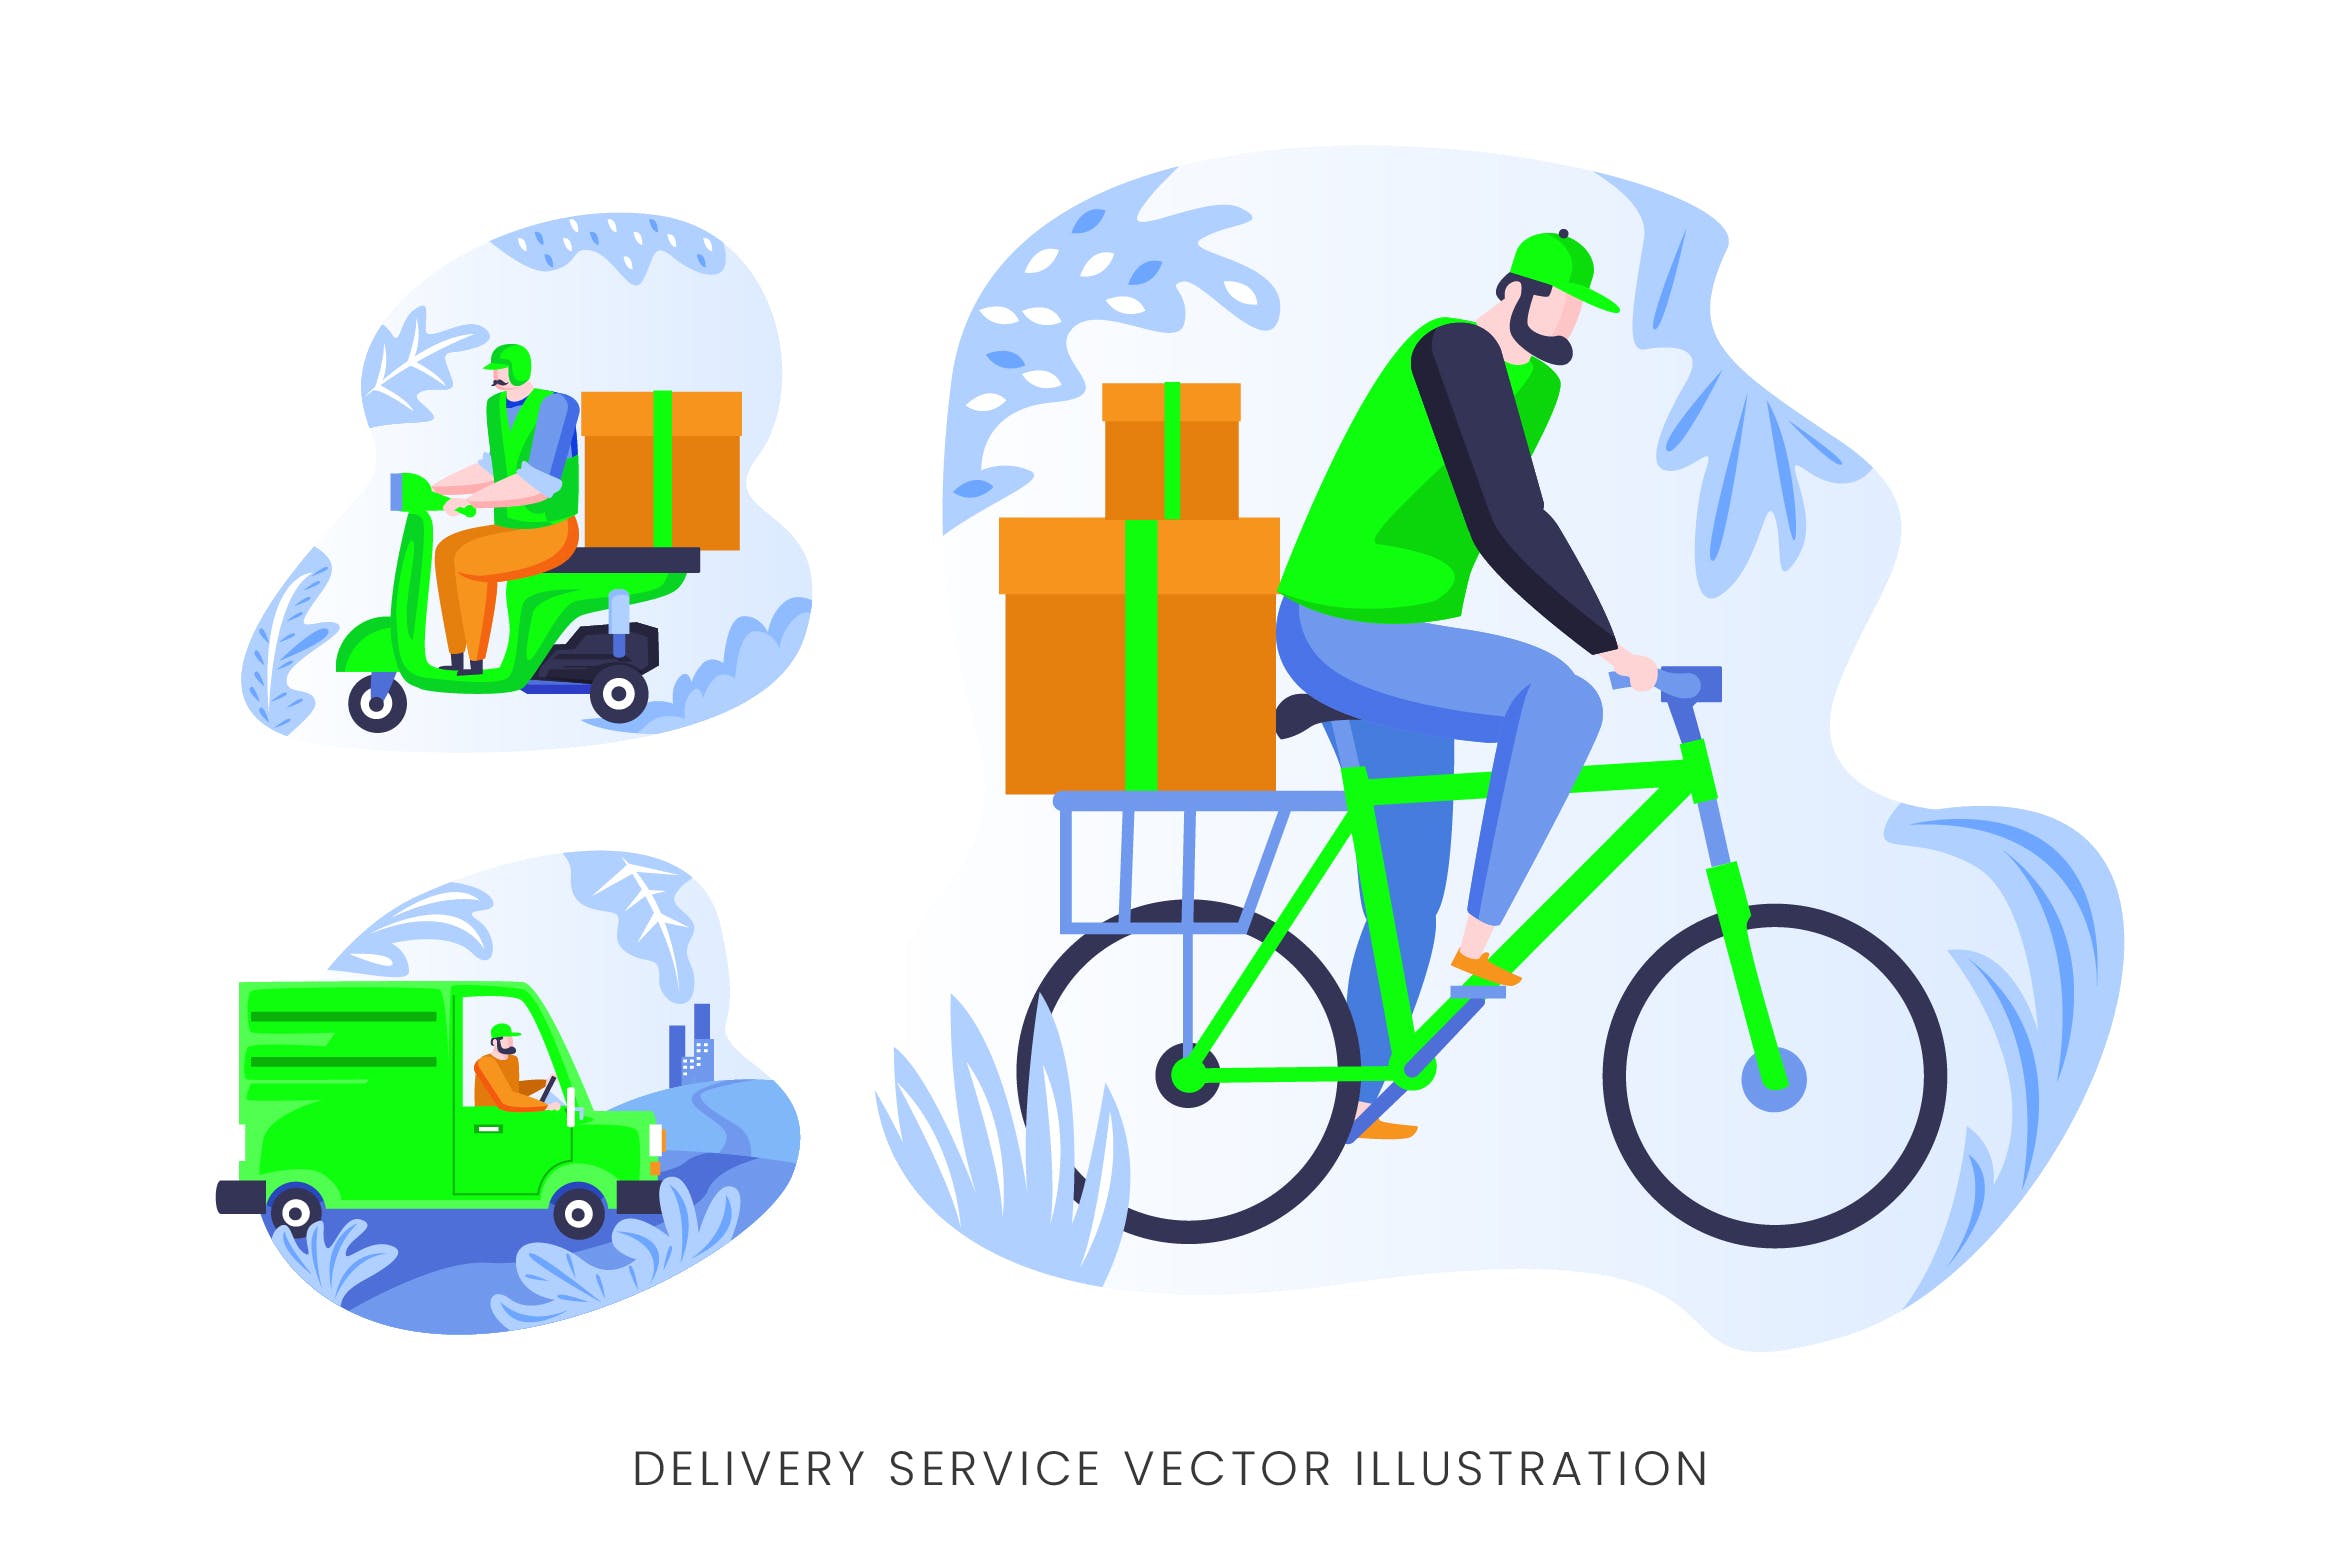 快递员送货员人物形象非凡图库精选手绘插画矢量素材 Delivery Services Vector Character Set插图